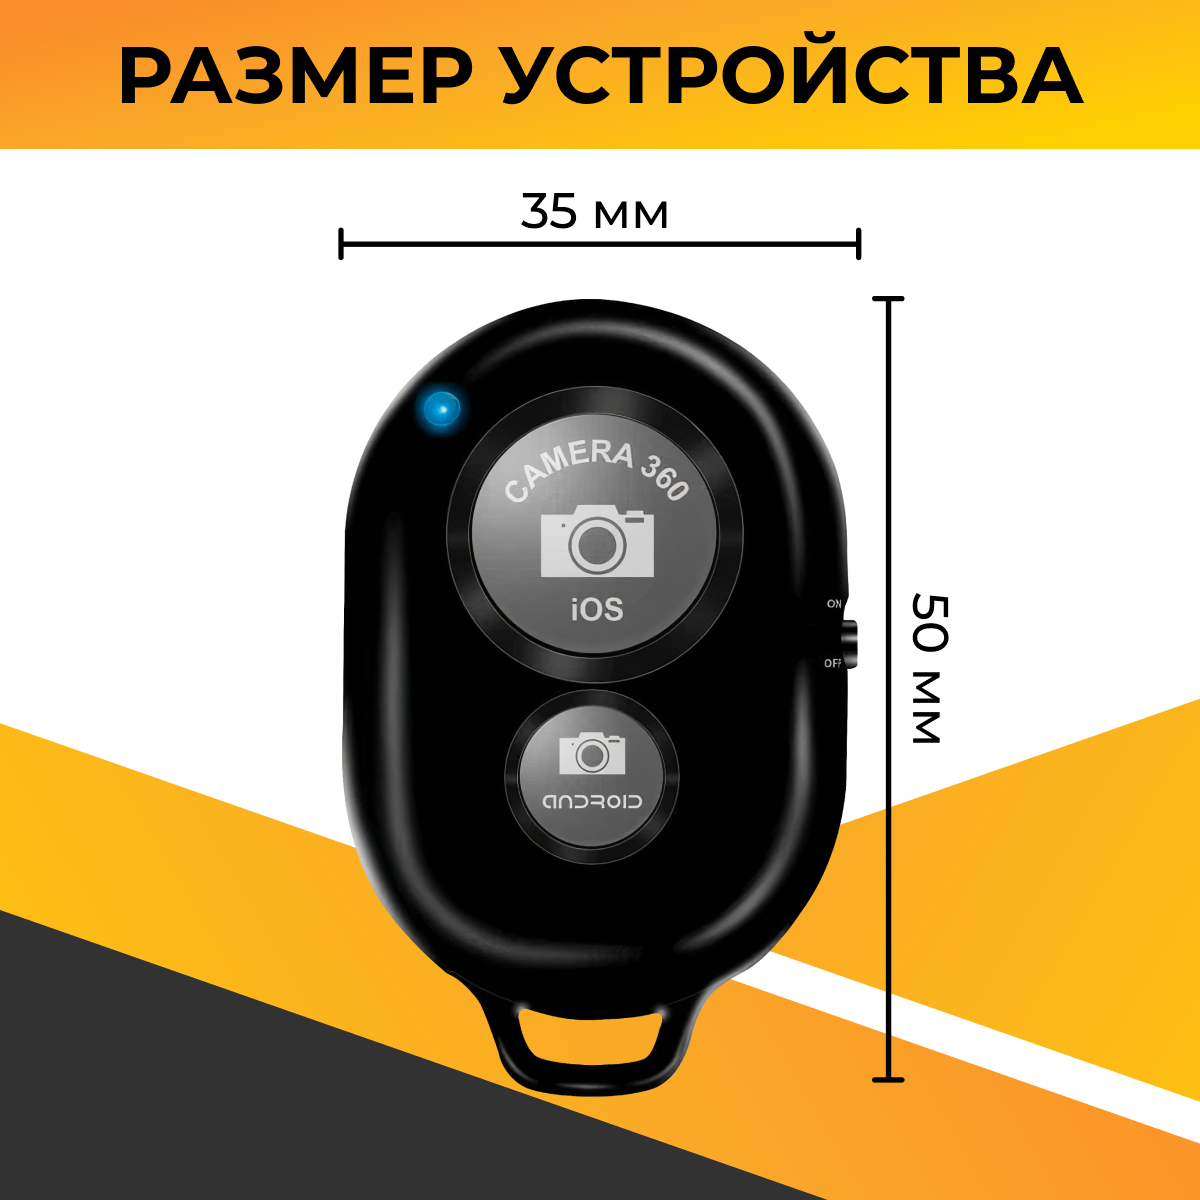 Универсальный пульт Bluetooth для селфи / Беспроводная кнопка для управления камерой телефона / Пульт-брелок для дистанционной съемки / Черный